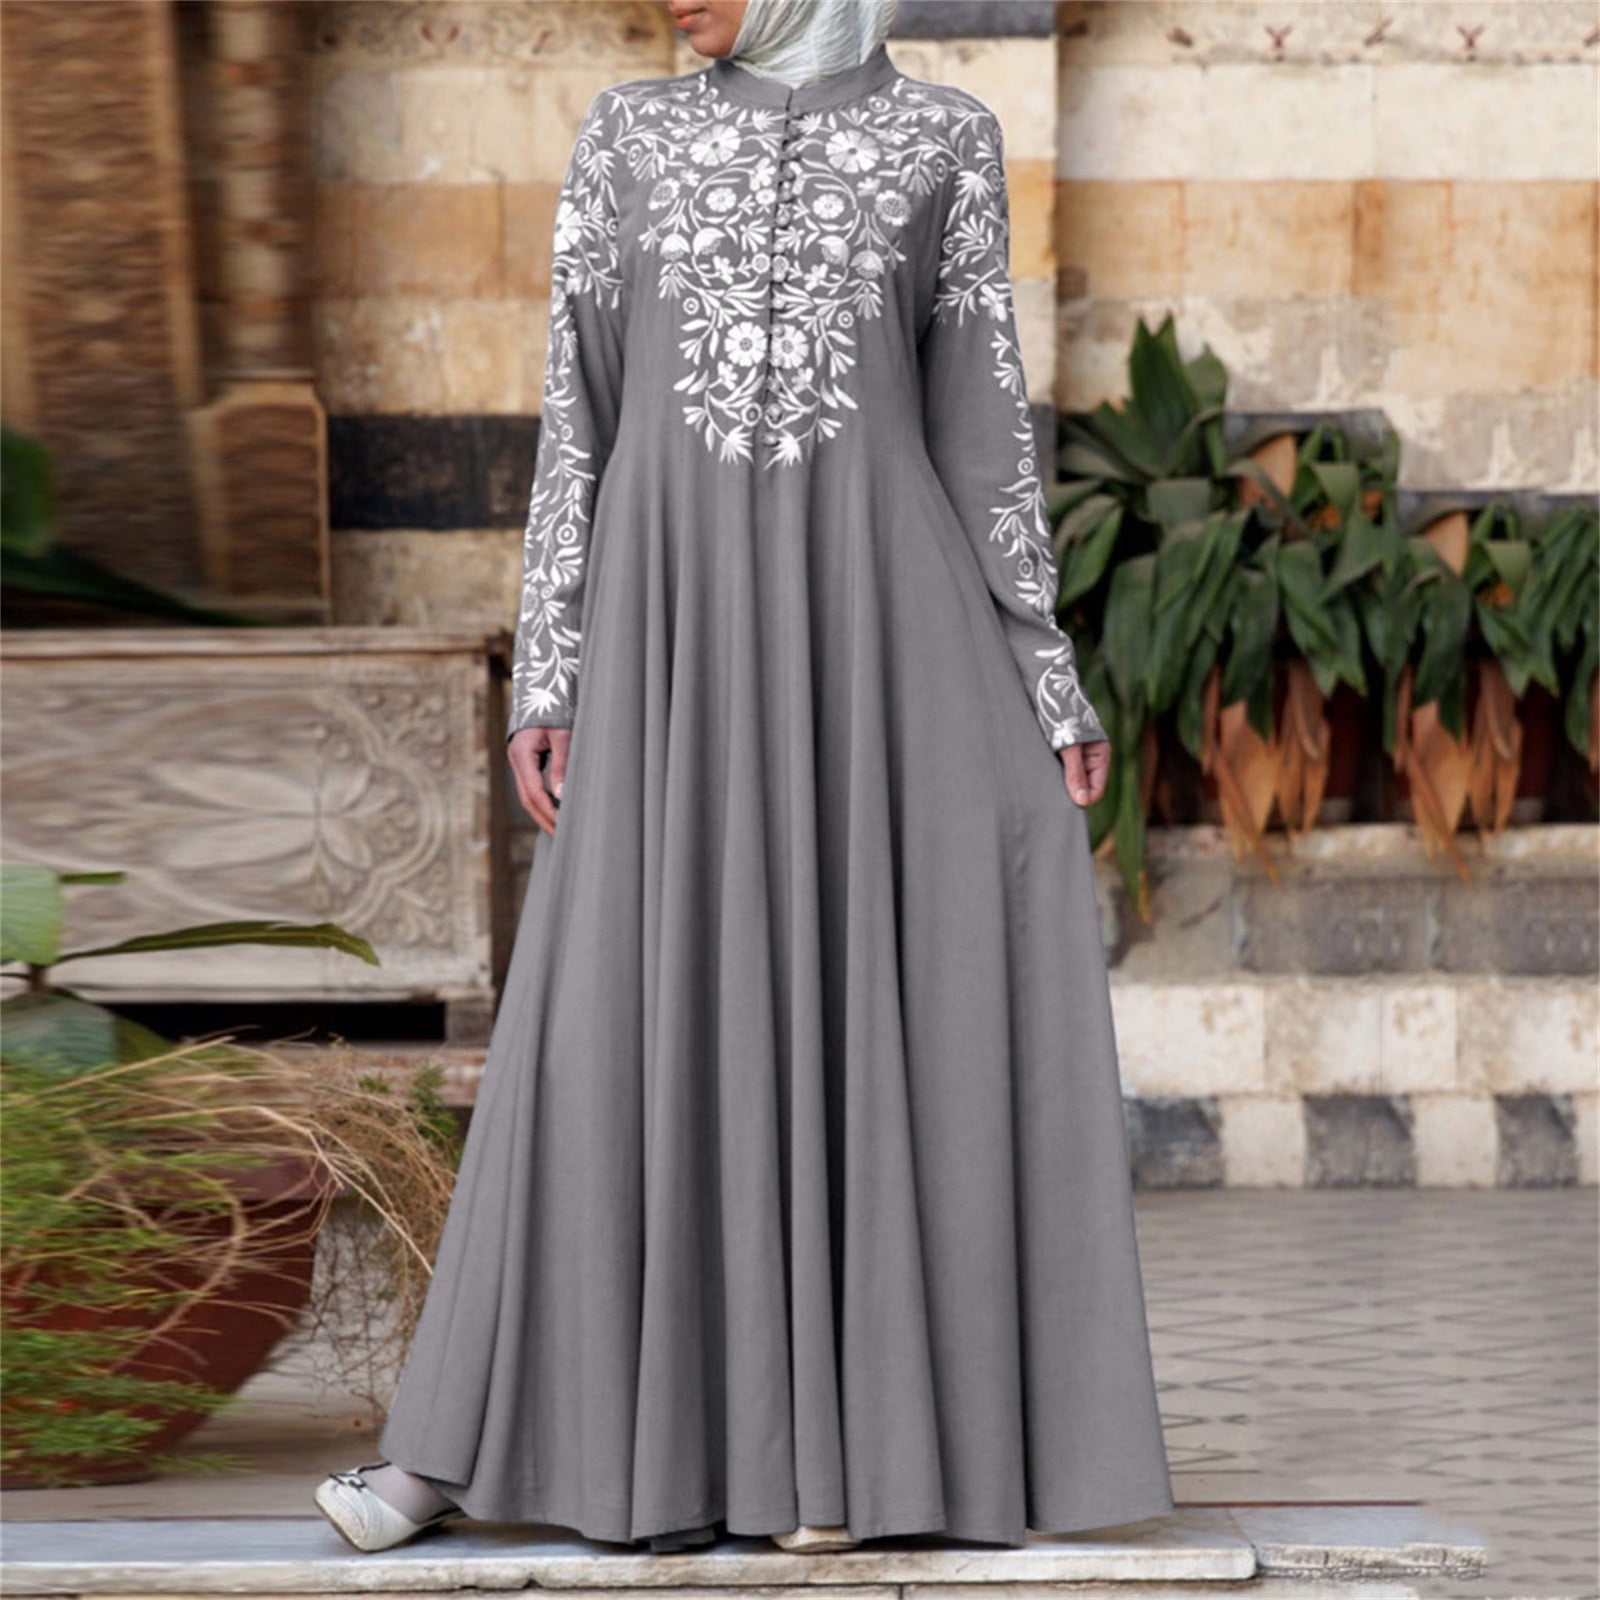 Womens Muslim Clothes Islamic Long-Sleeve Maxi Abaya Kaftan Arab Dresses